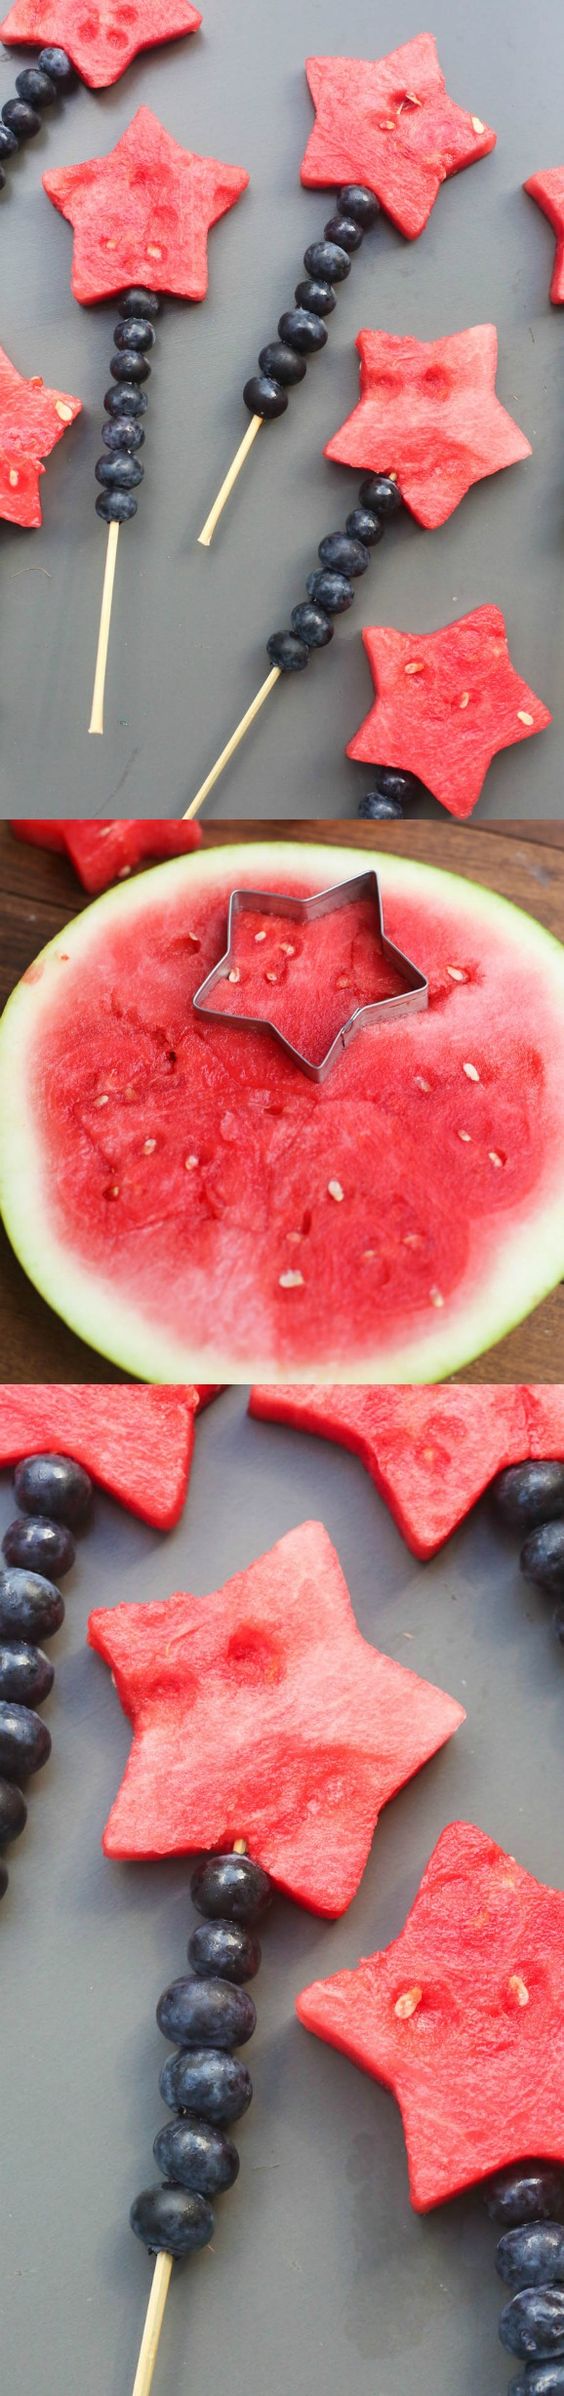 Ezért a görögdinnye receptért rajong a Pinterest